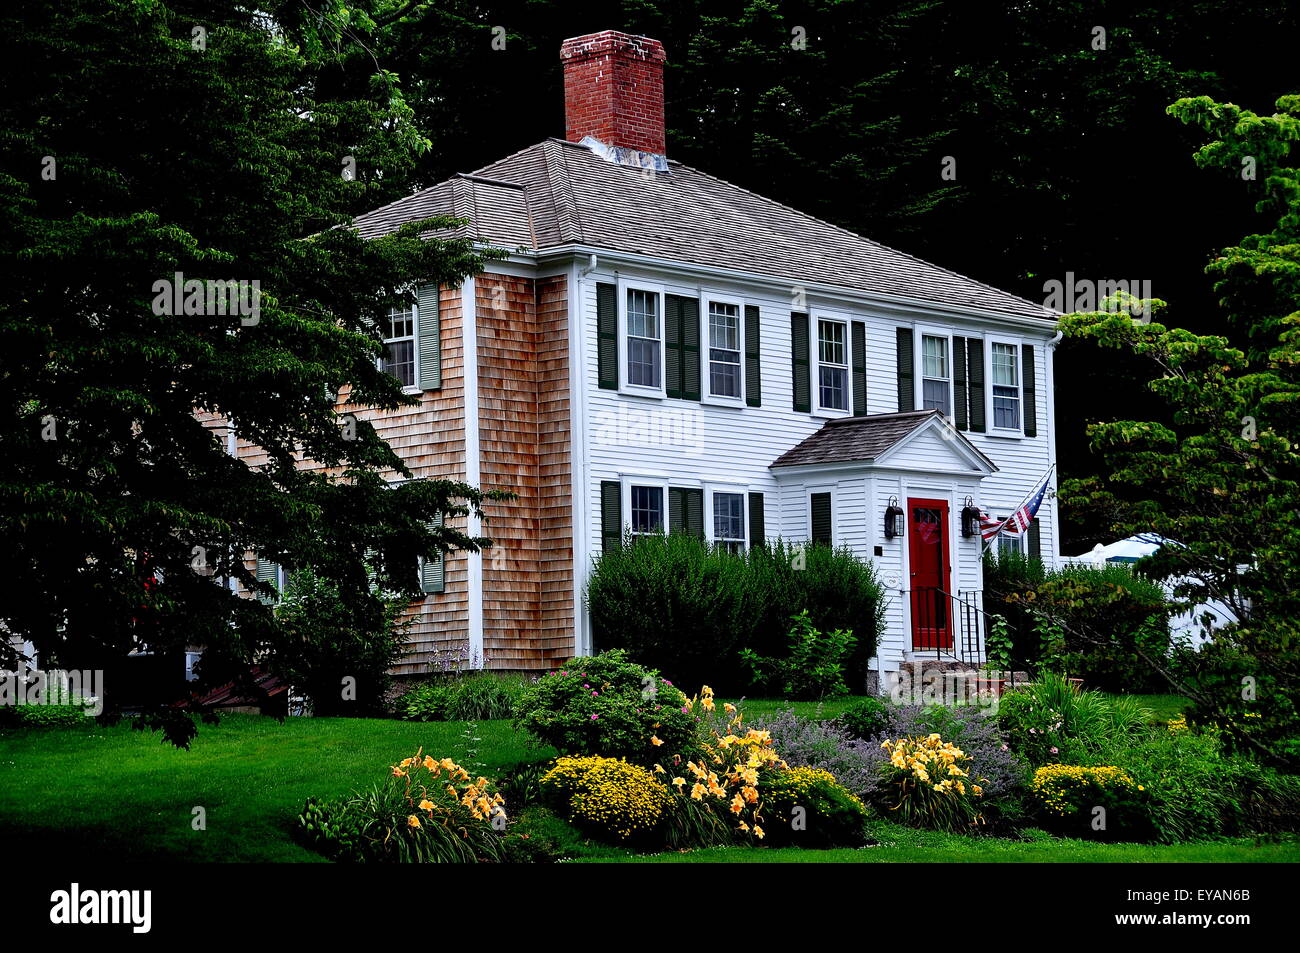 Sandwich, Massachusetts: bello c. 1750 casa coloniale con padiglione, camino centrale, estate e giardini di fiori Foto Stock